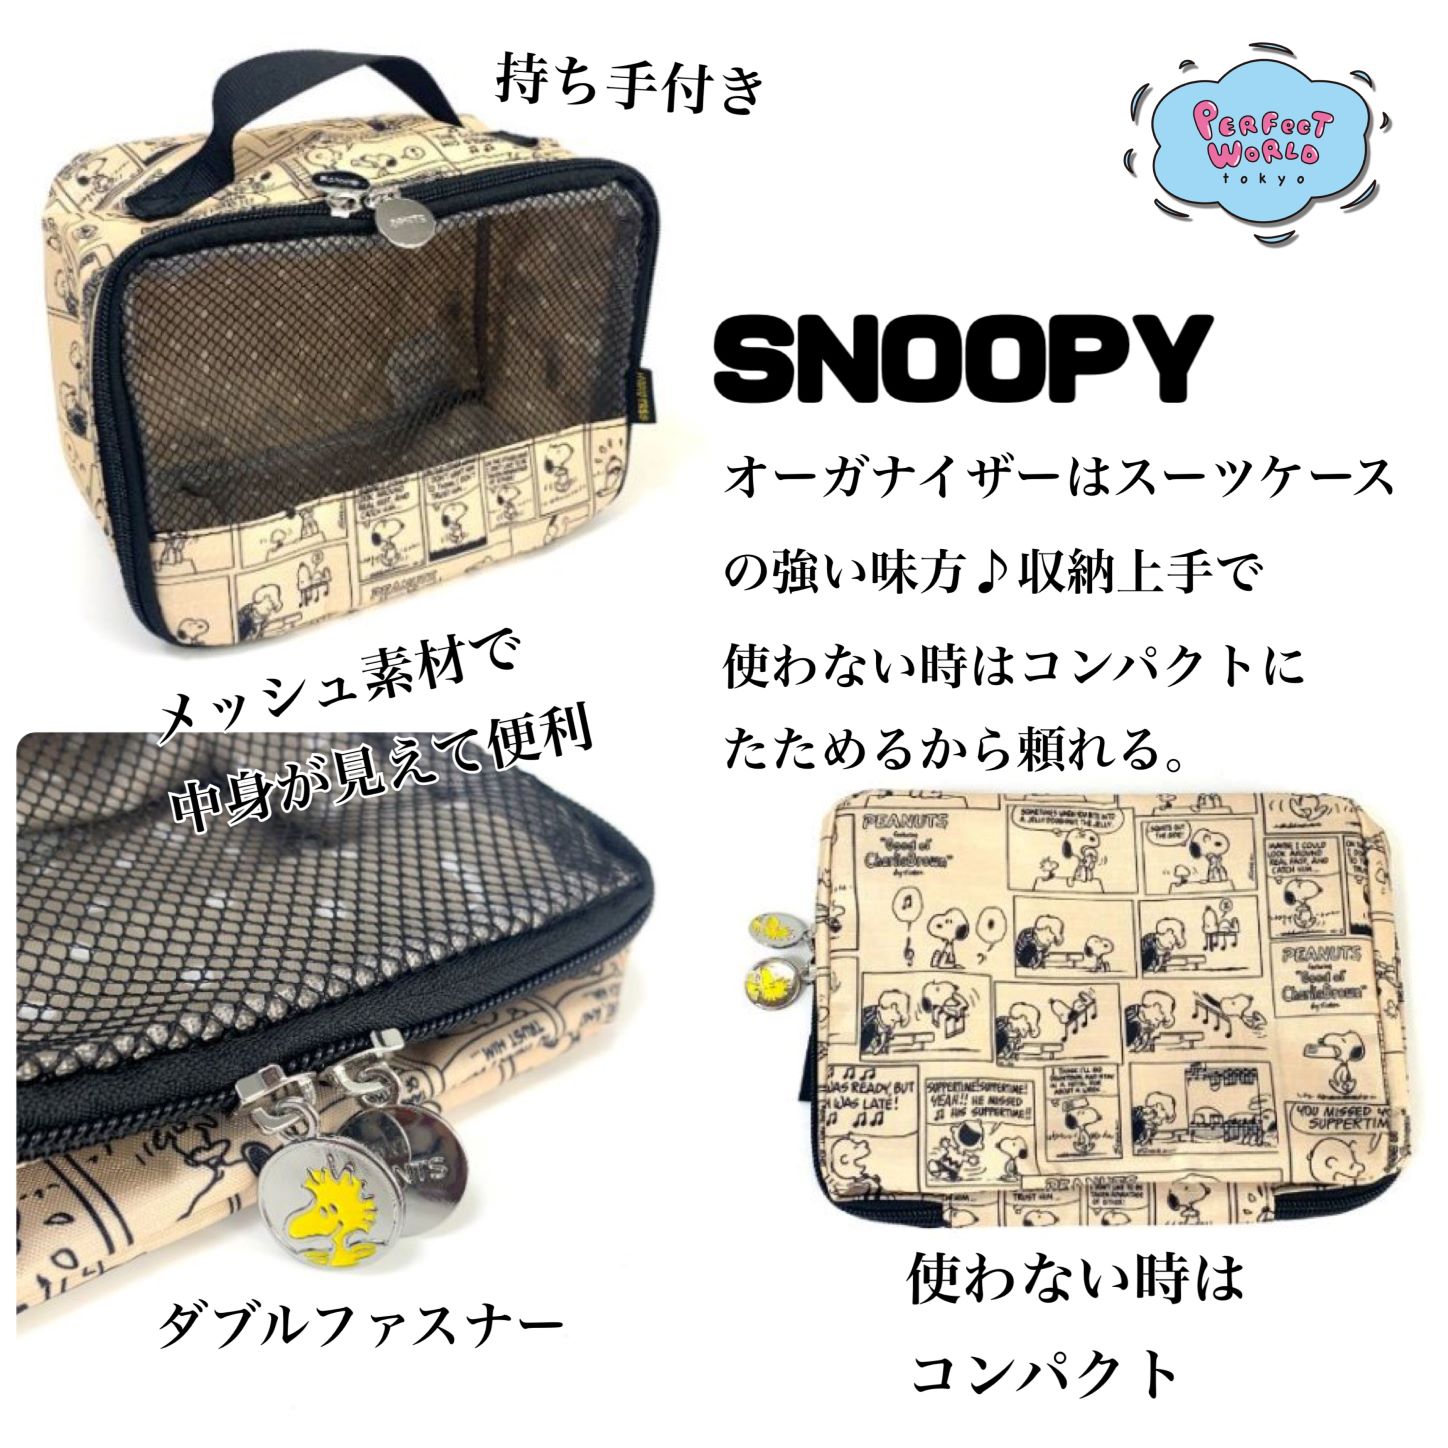 Snoopy Hapitasオーガナイザーはスーツケースの強い味方 収納上手で使わない時はコンパクトにたためるから ついつい頼っちゃう Perfect World Tokyo